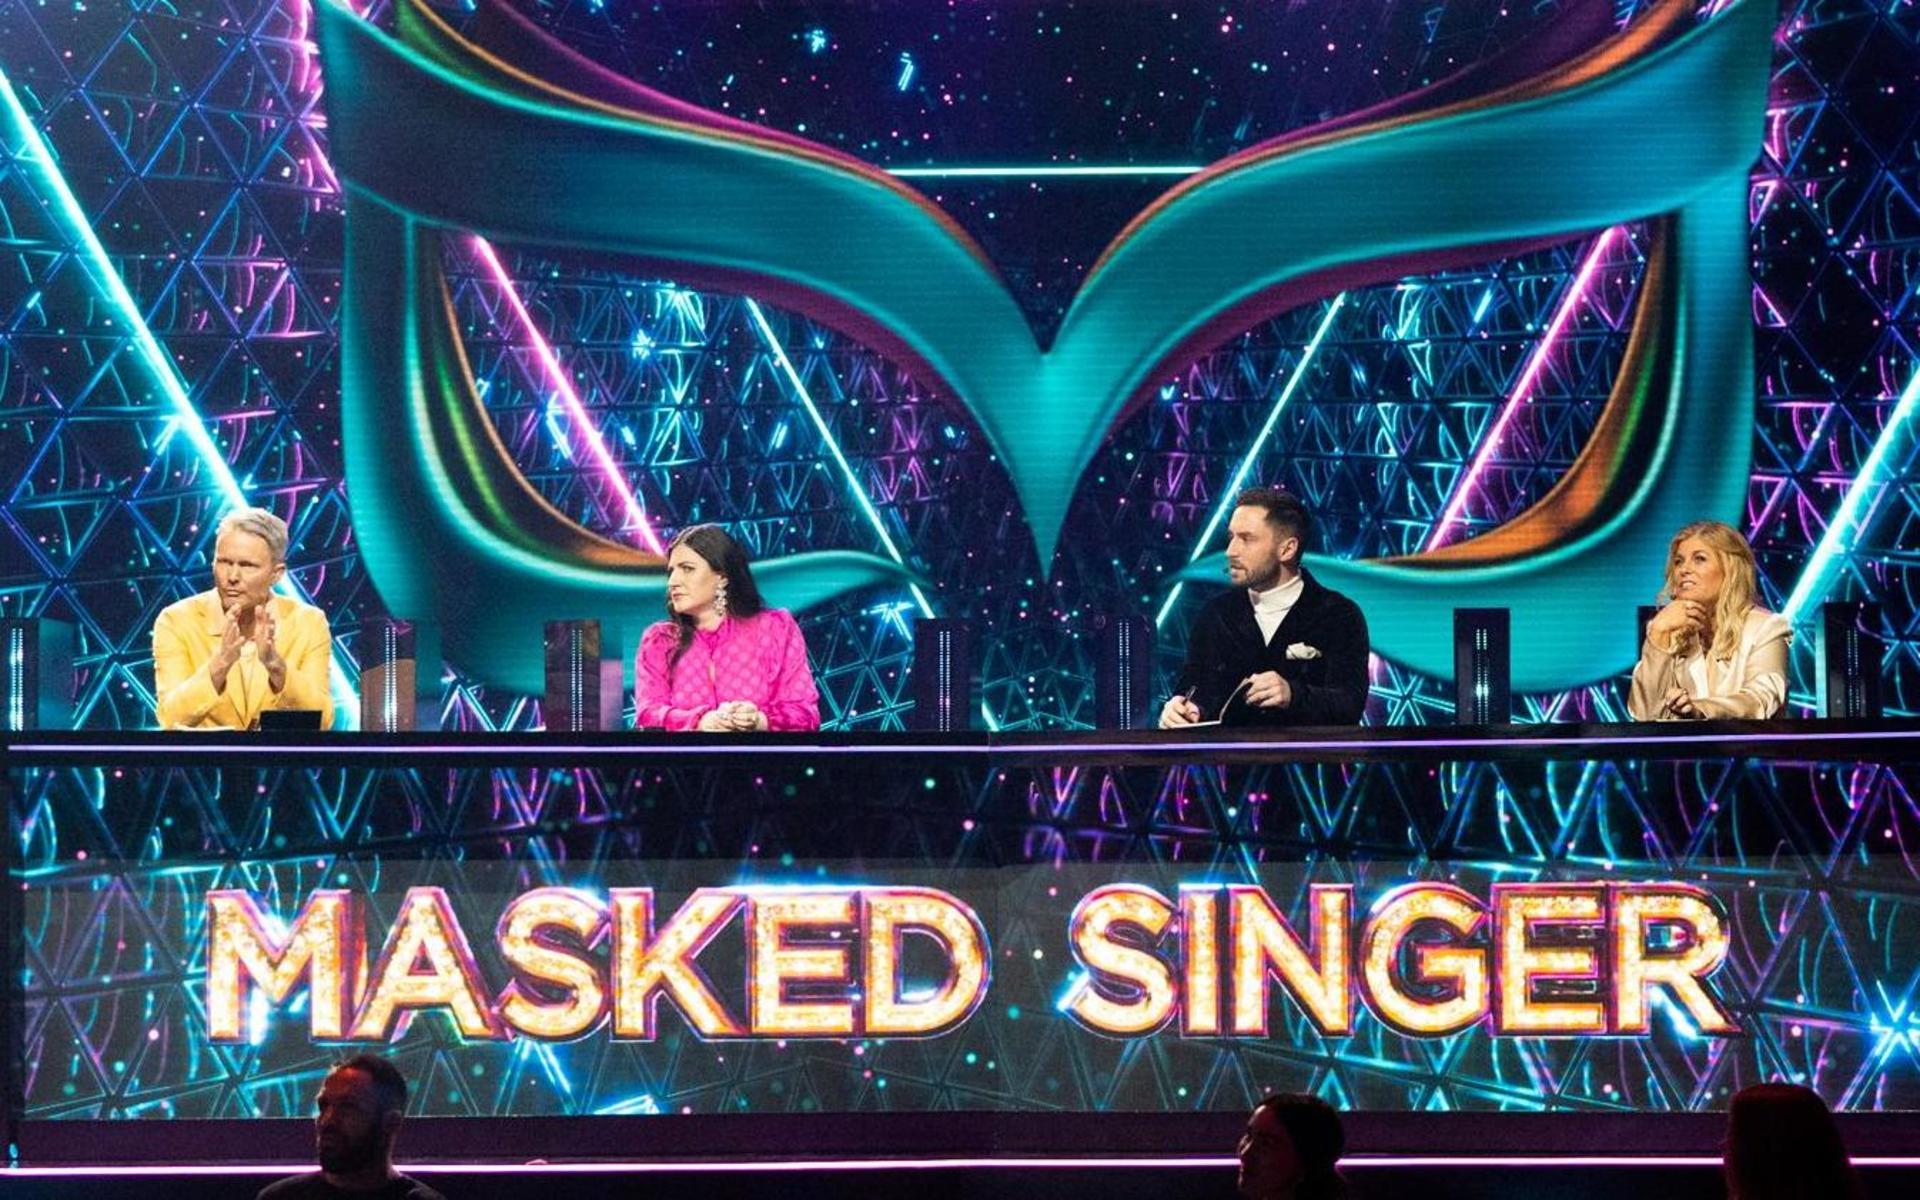 Panelen i ”Masked singer Sverige”, fr.v: Felix Herngren, Nour El Refai, Måns Zelmerlöw och Pernilla Wahlgren.